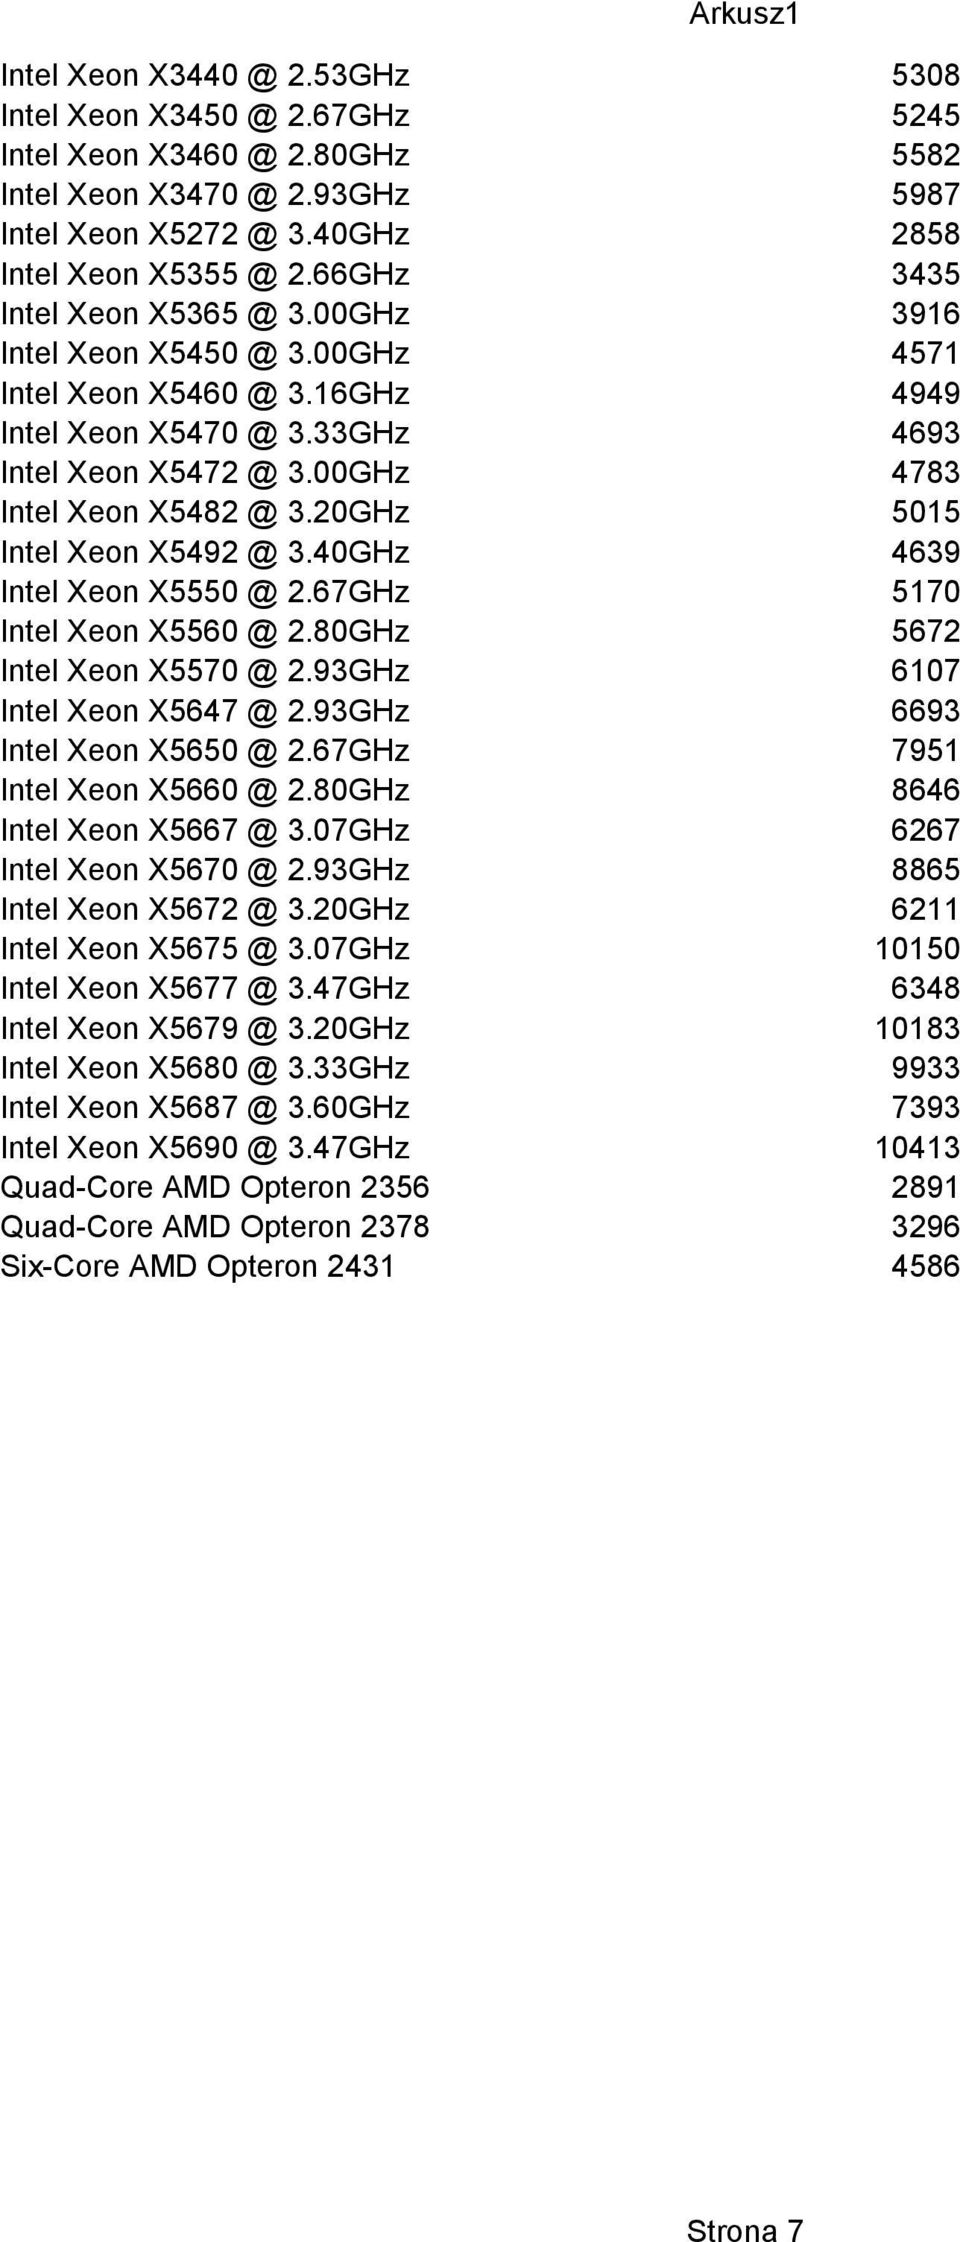 20GHz 5015 Intel Xeon X5492 @ 3.40GHz 4639 Intel Xeon X5550 @ 2.67GHz 5170 Intel Xeon X5560 @ 2.80GHz 5672 Intel Xeon X5570 @ 2.93GHz 6107 Intel Xeon X5647 @ 2.93GHz 6693 Intel Xeon X5650 @ 2.